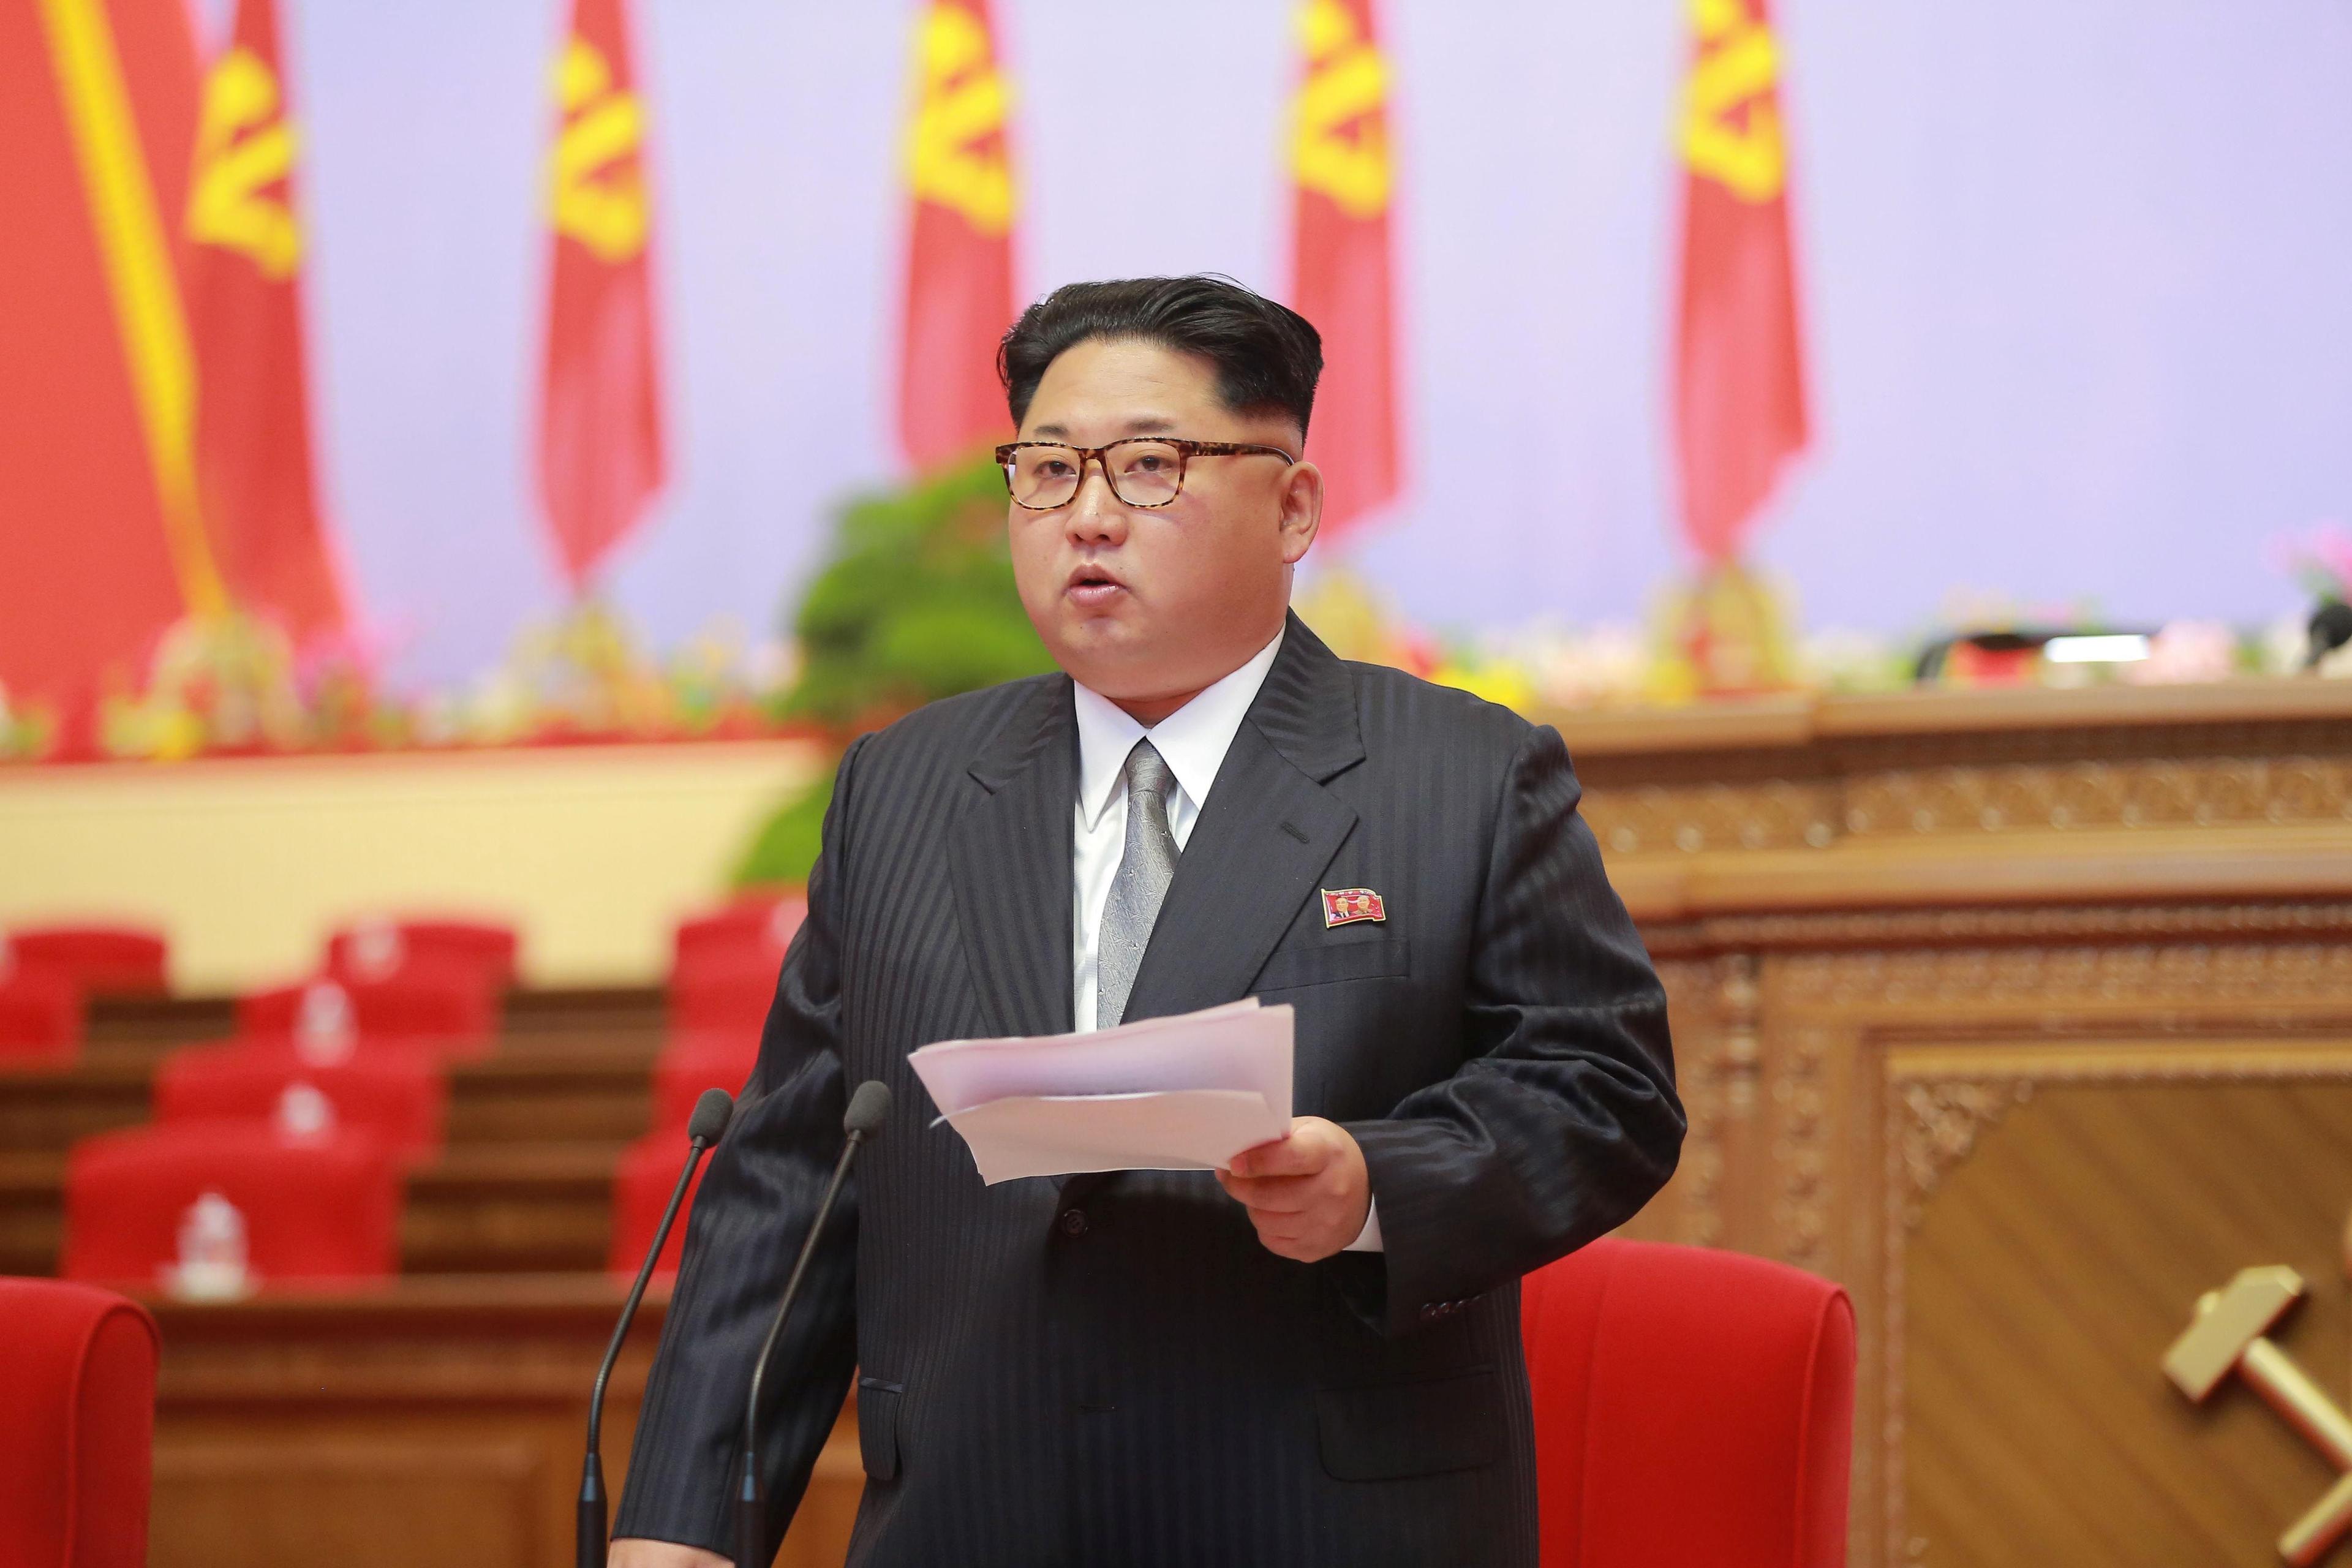 Sjevernokorejski mediji pokušali su predstaviti situaciju s državnim čelnikom kao uobičajenu - Avaz